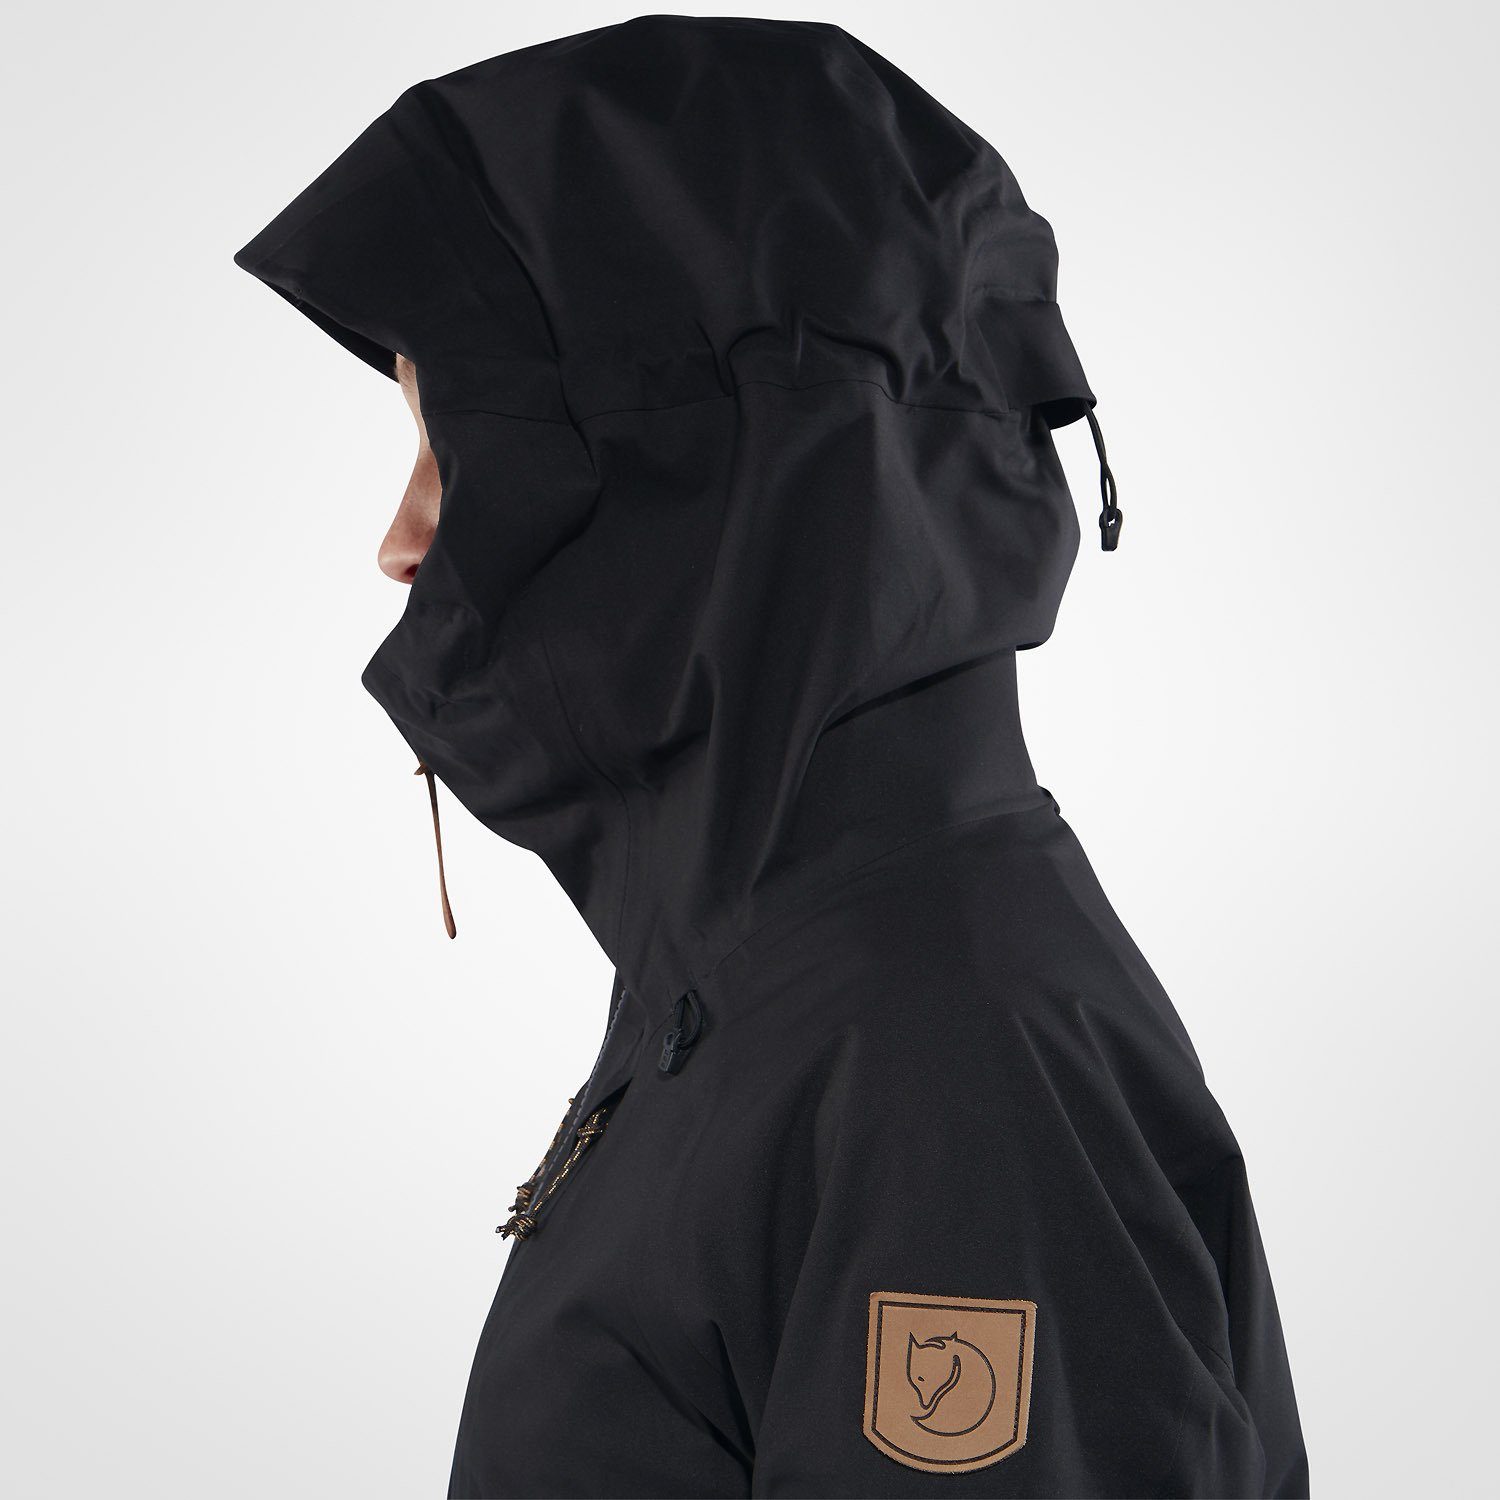 Schwarz Keb Fjällräven Regenjacke Outdoorjacke Eco-Shell Jacket